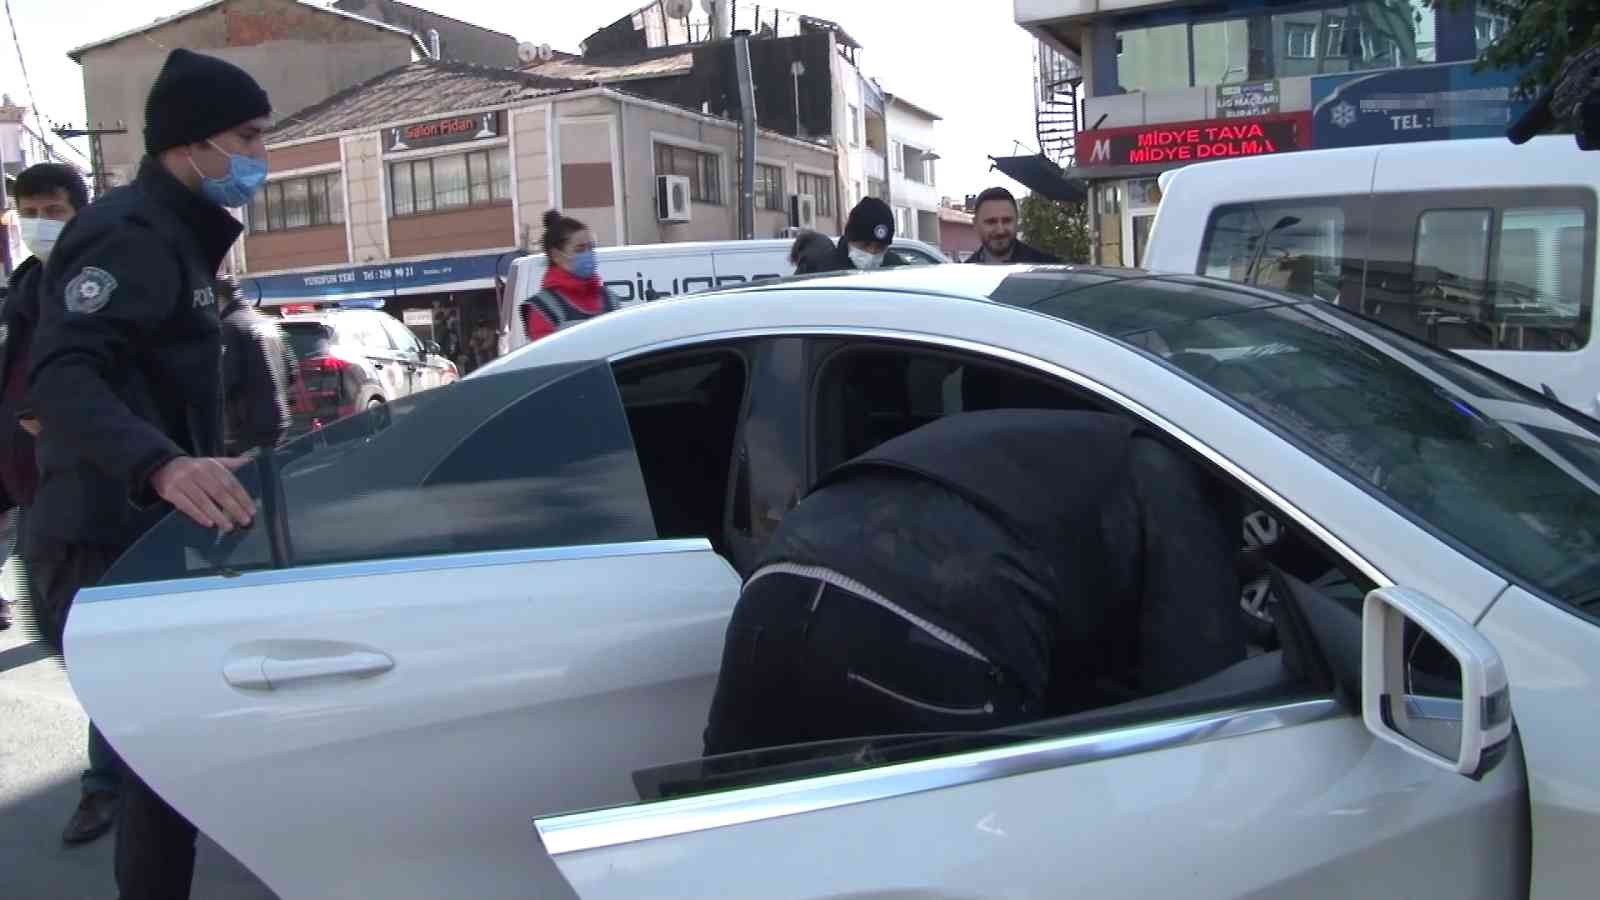 Okmeydanı’nda araçlar didik didik arandı #istanbul